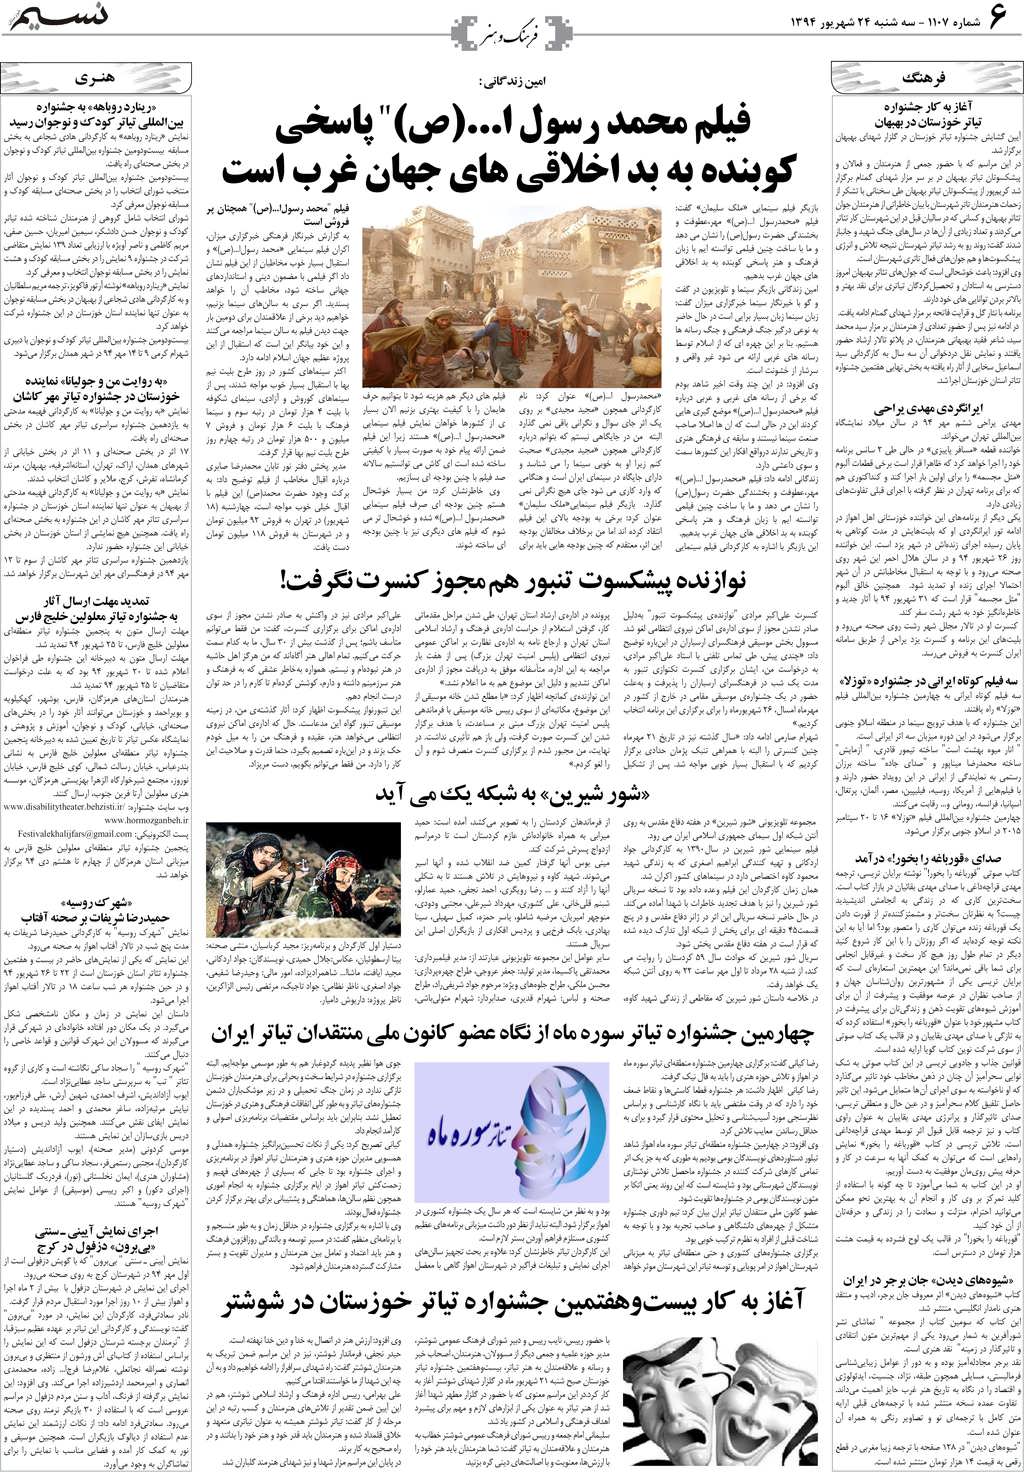 صفحه فرهنگ و هنر روزنامه نسیم شماره 1107